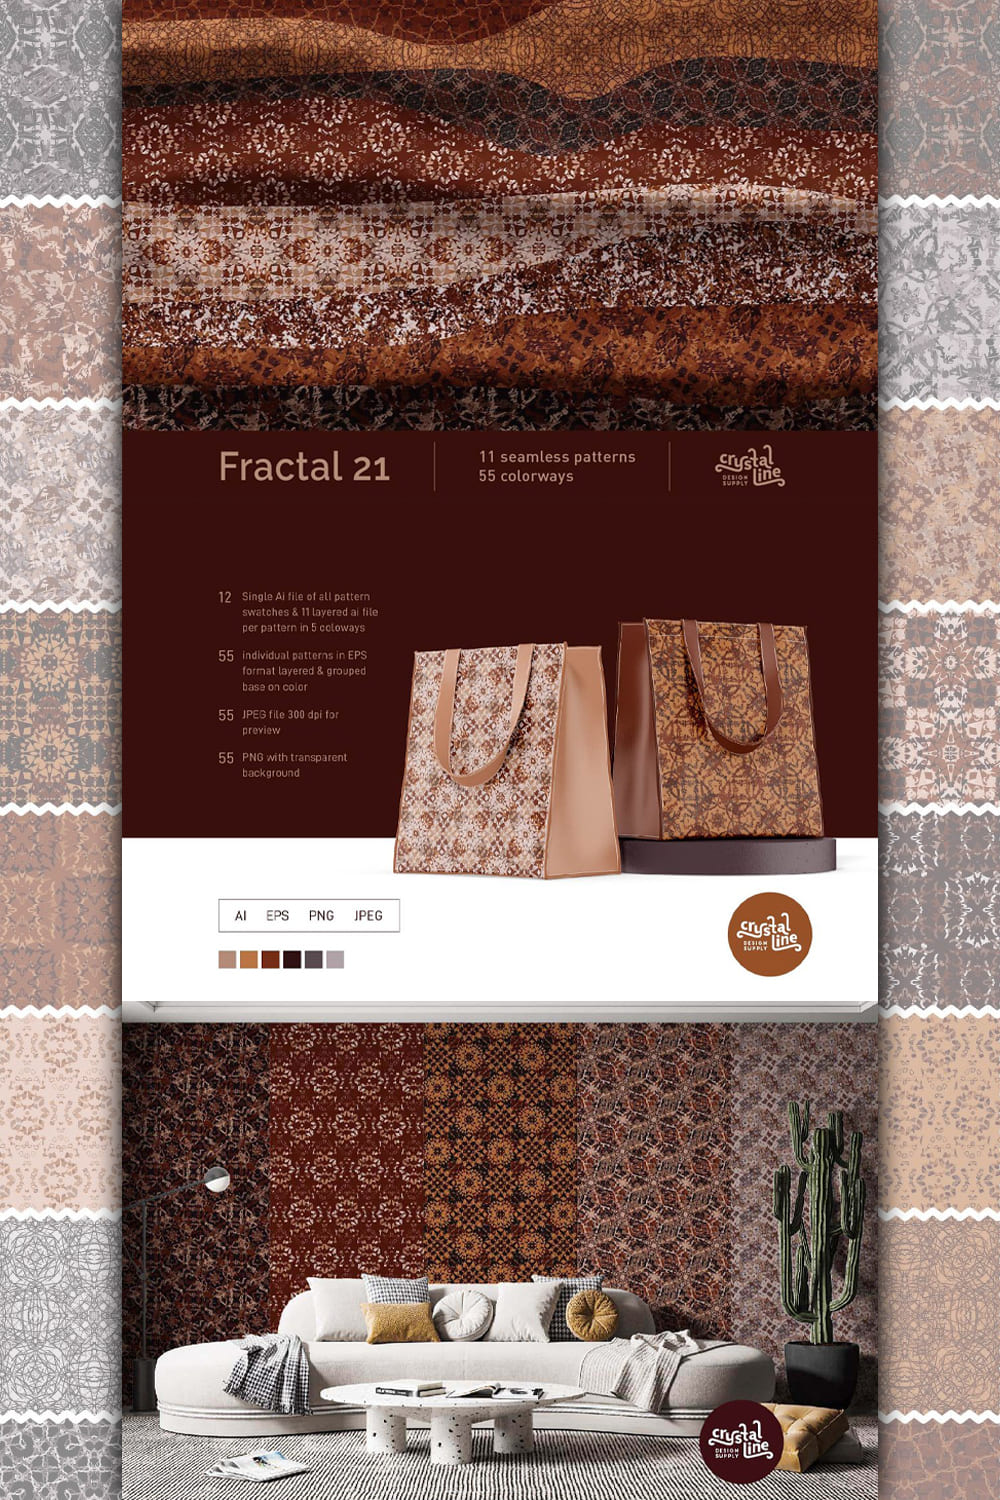 Fractal Patterns 21 pinterest image.